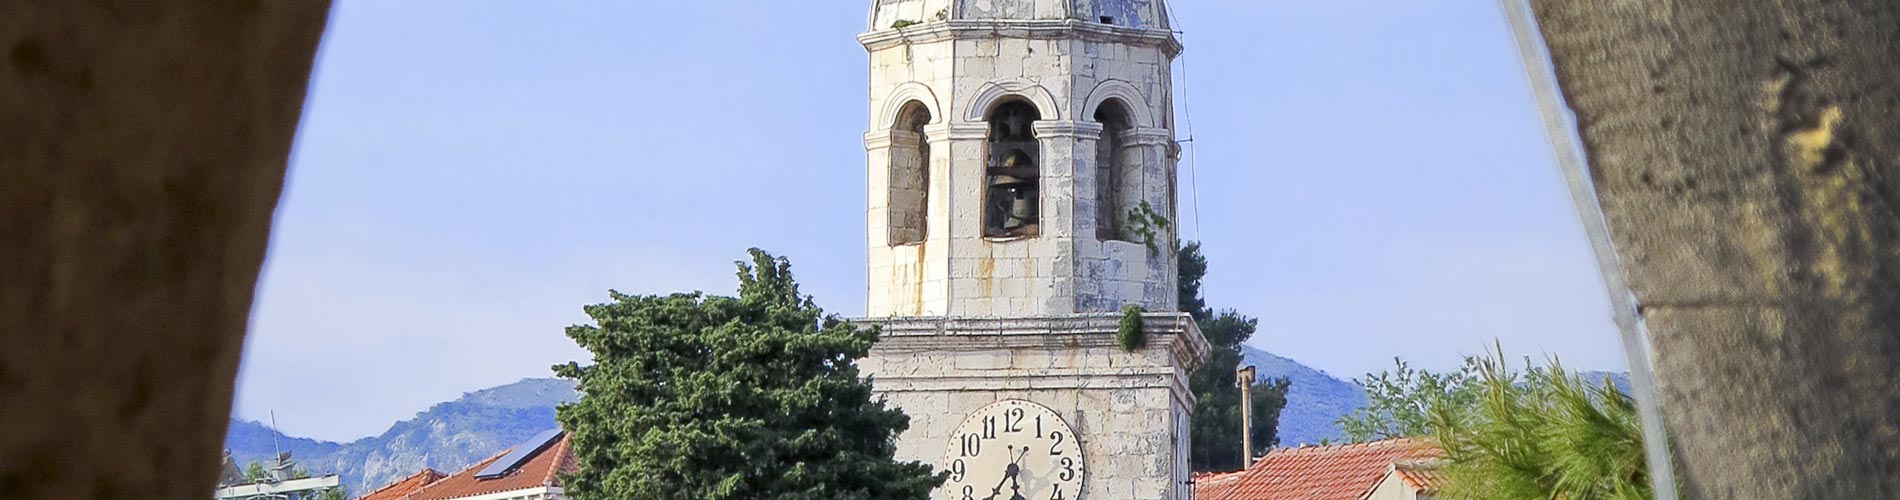 Tower at Cavtat Harbor in Dalmatia.jpg